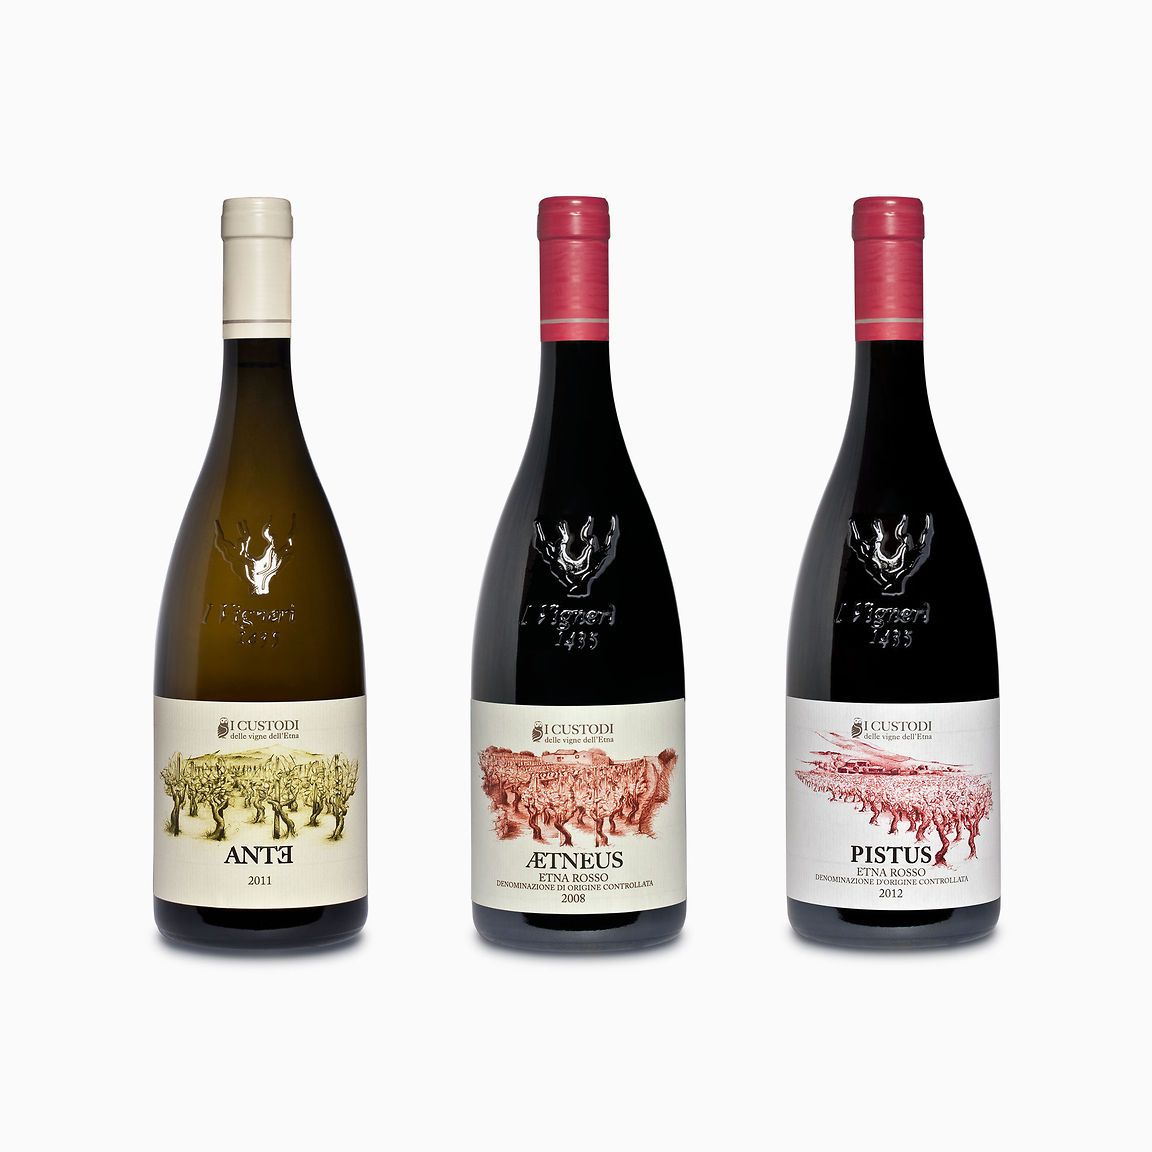 Progettazione etichette per i vini de I custodi delle vigne dell&amp;#039;Etna